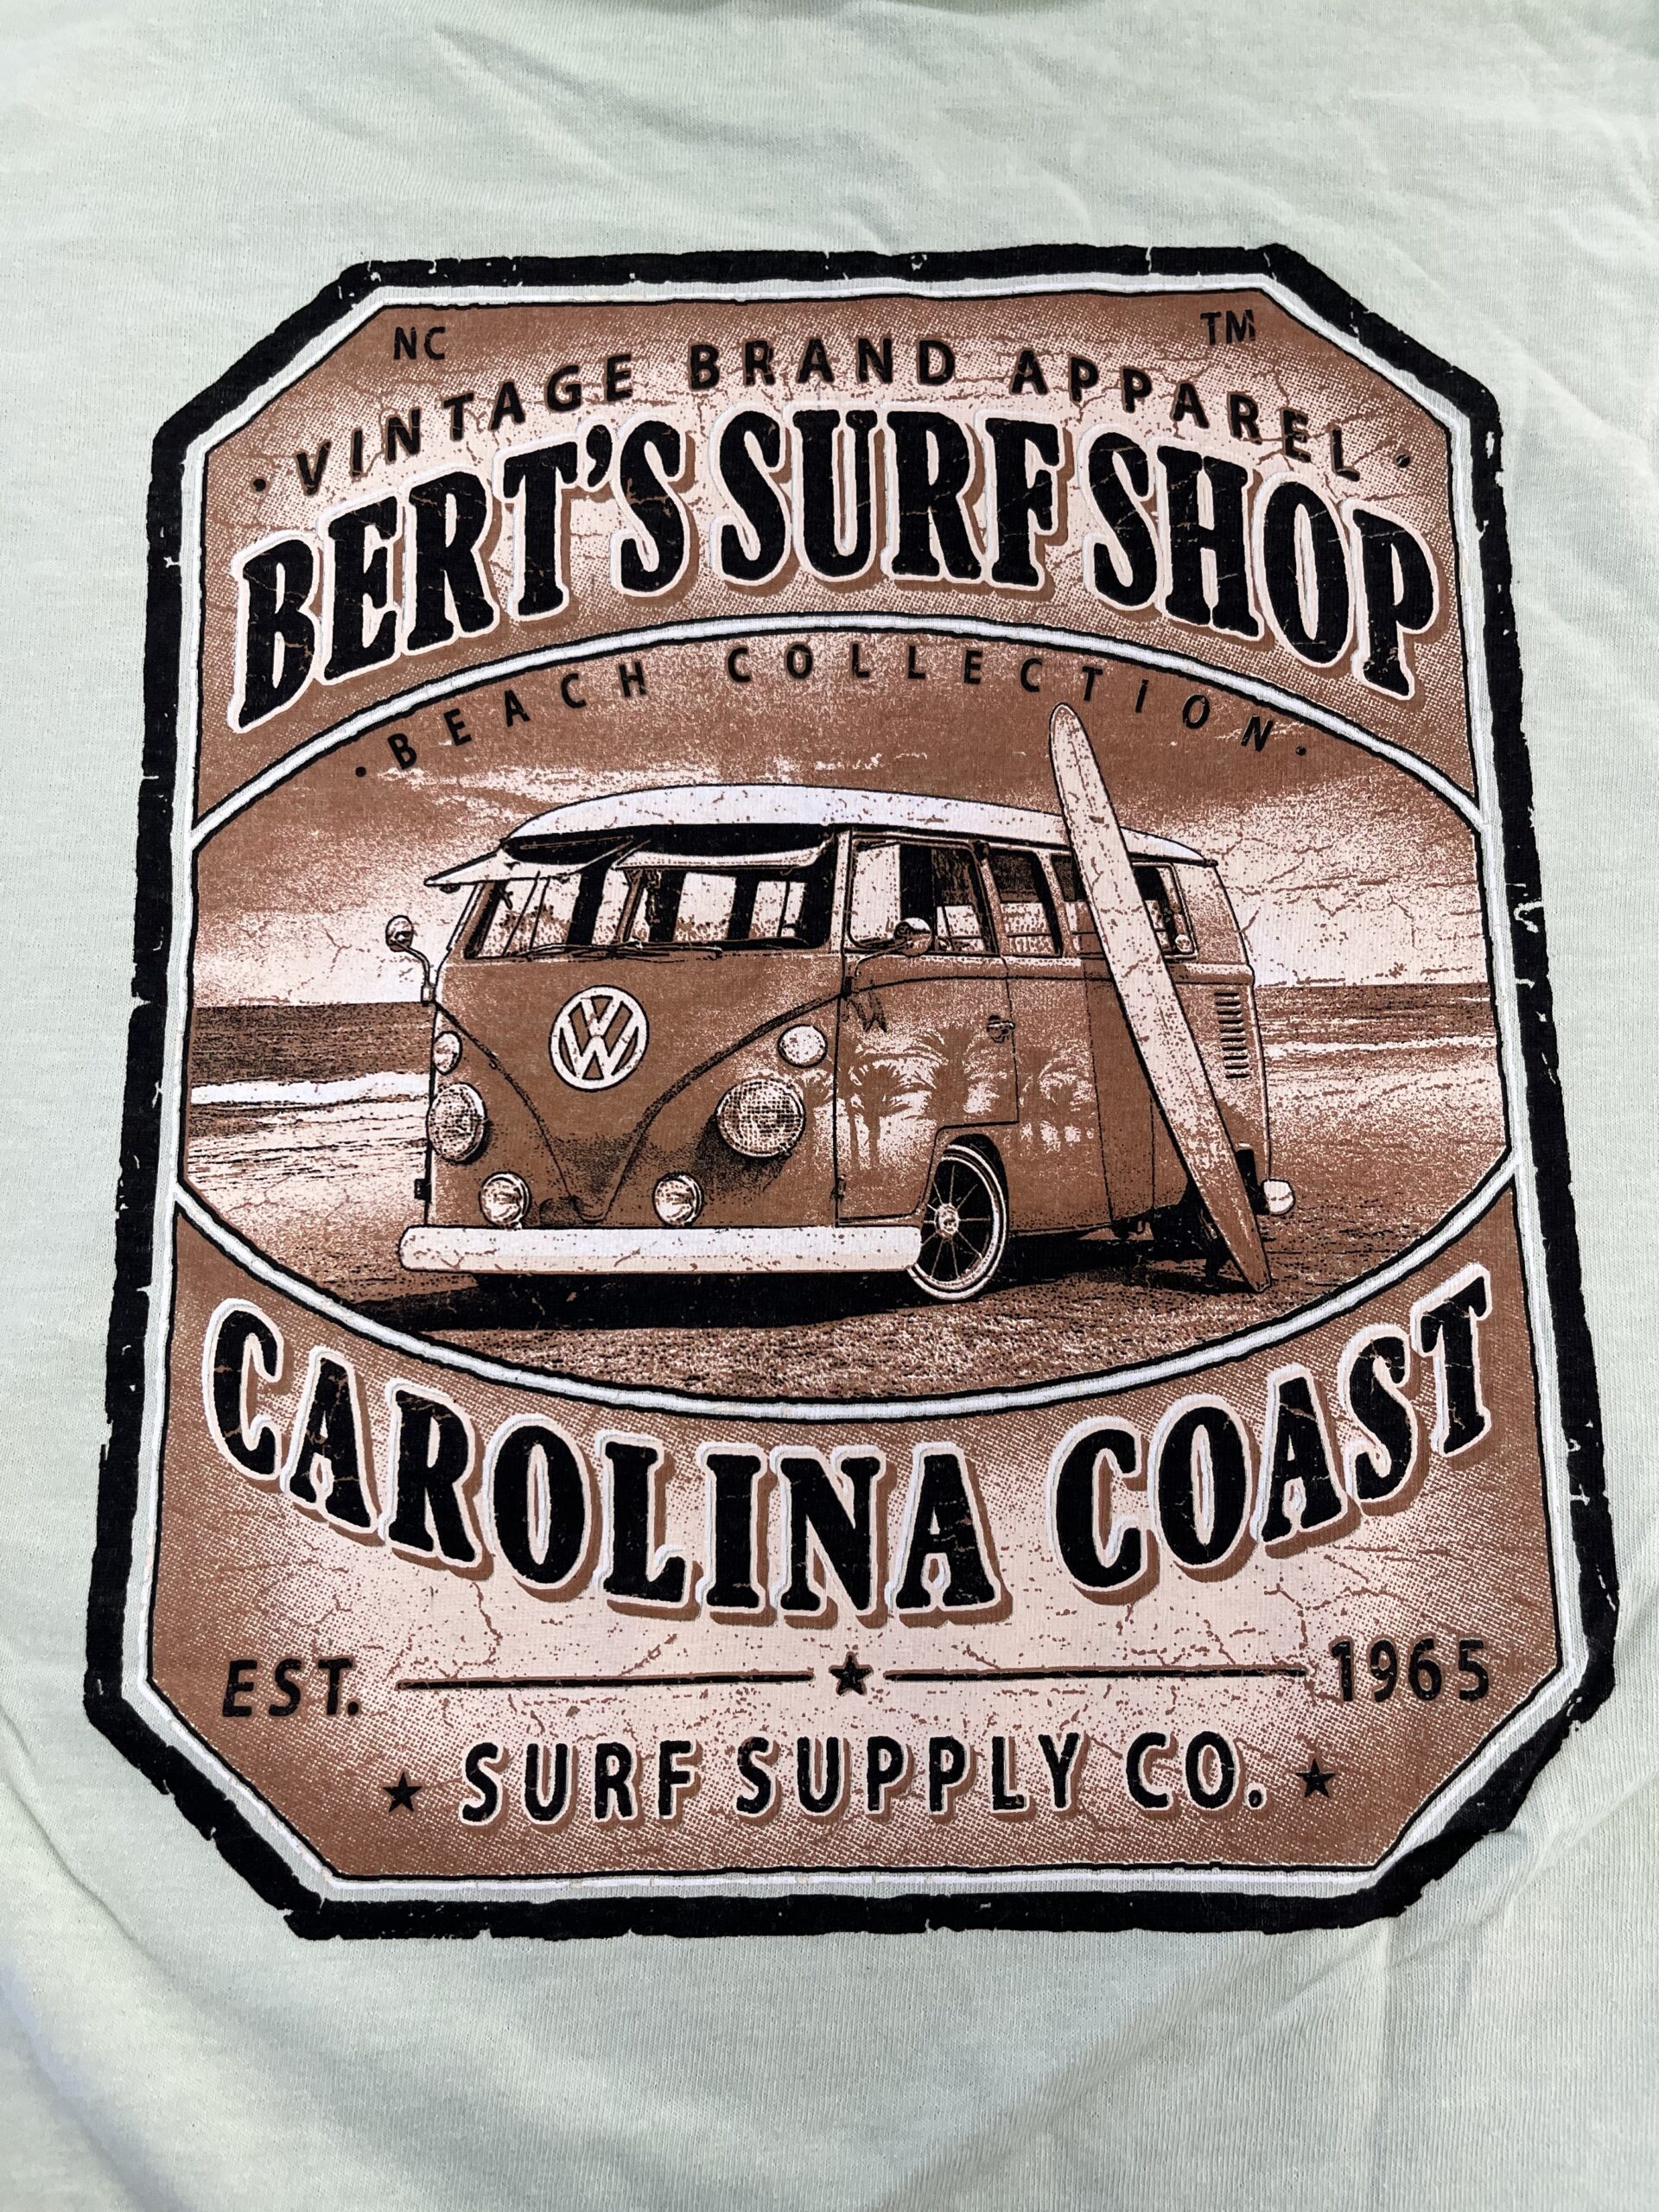 Bert's Surf Shop - Bert's Tee Shirt Vintage Beach Bus